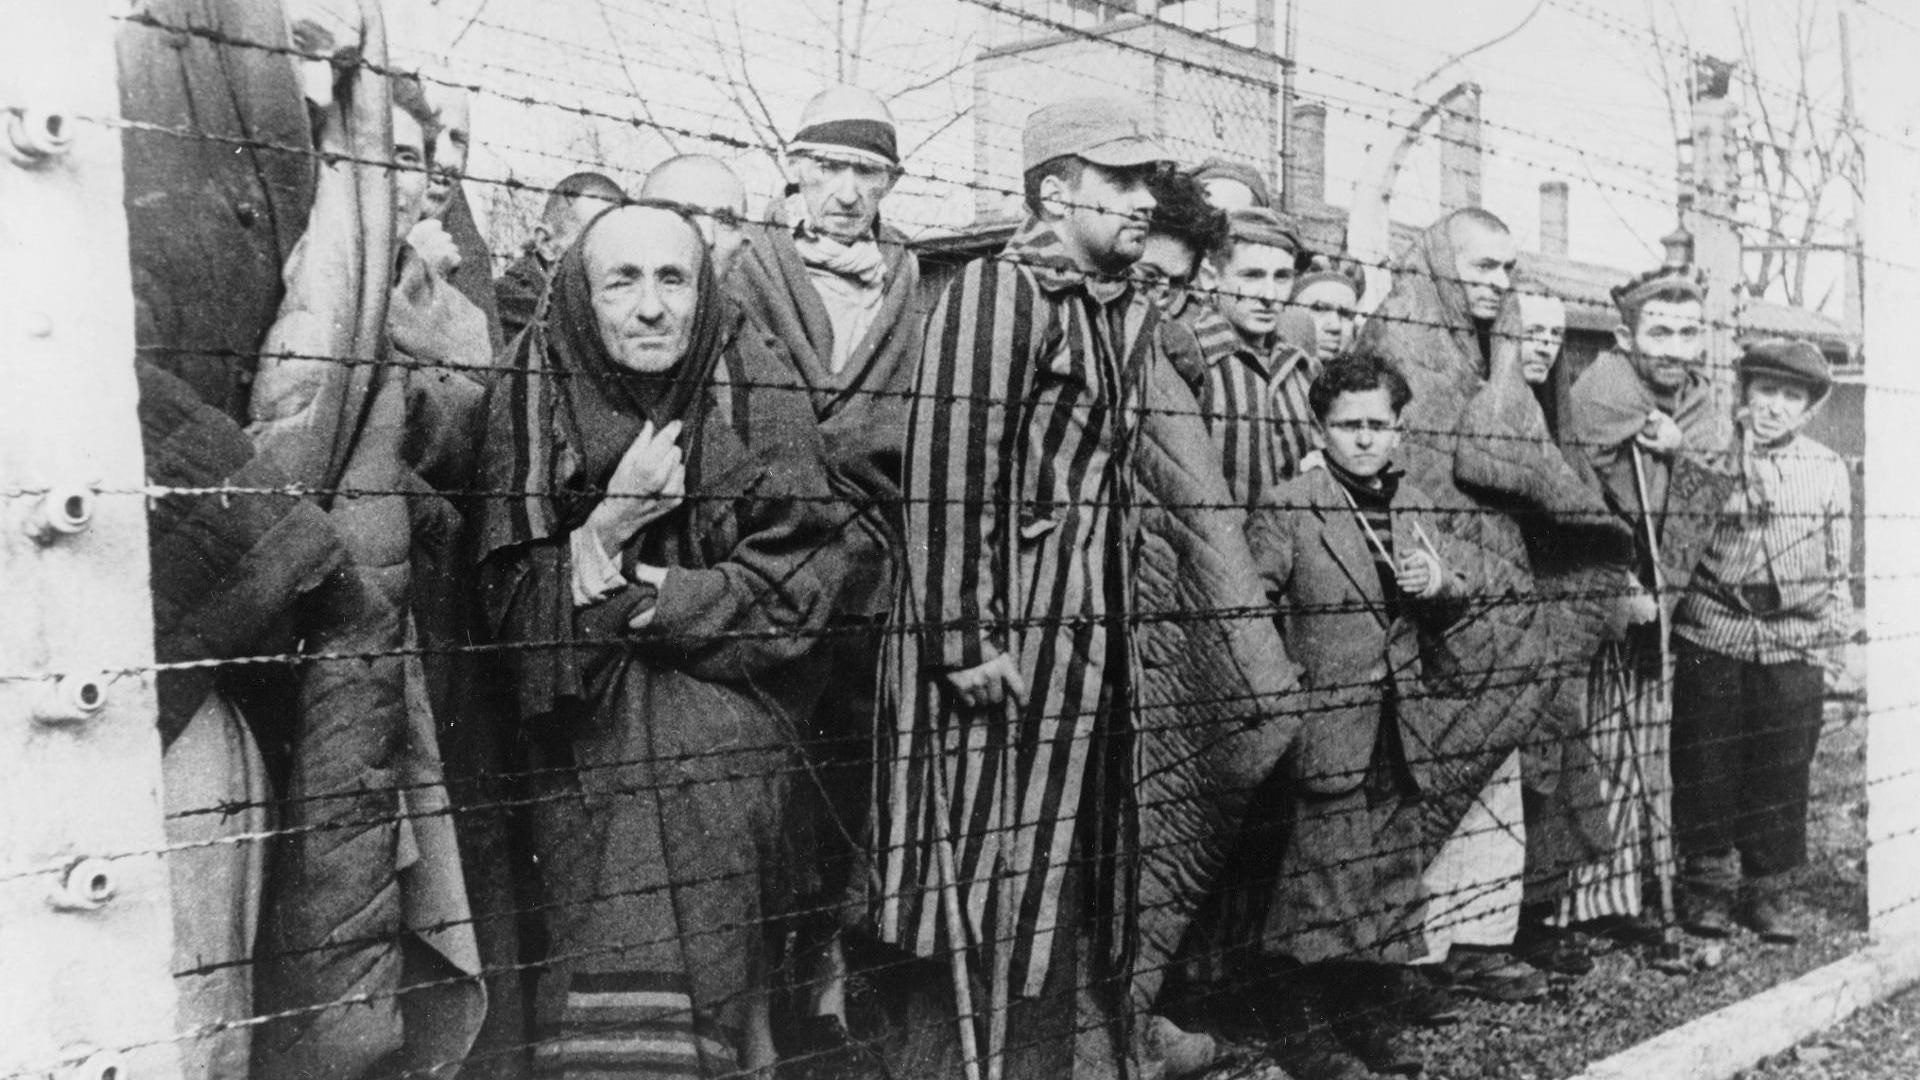 24 Mayıs 1943 - Auschwitz toplama kampında ölüm meleği adıyla anılan Nazi doktoru Josef Mengele göreve başladı